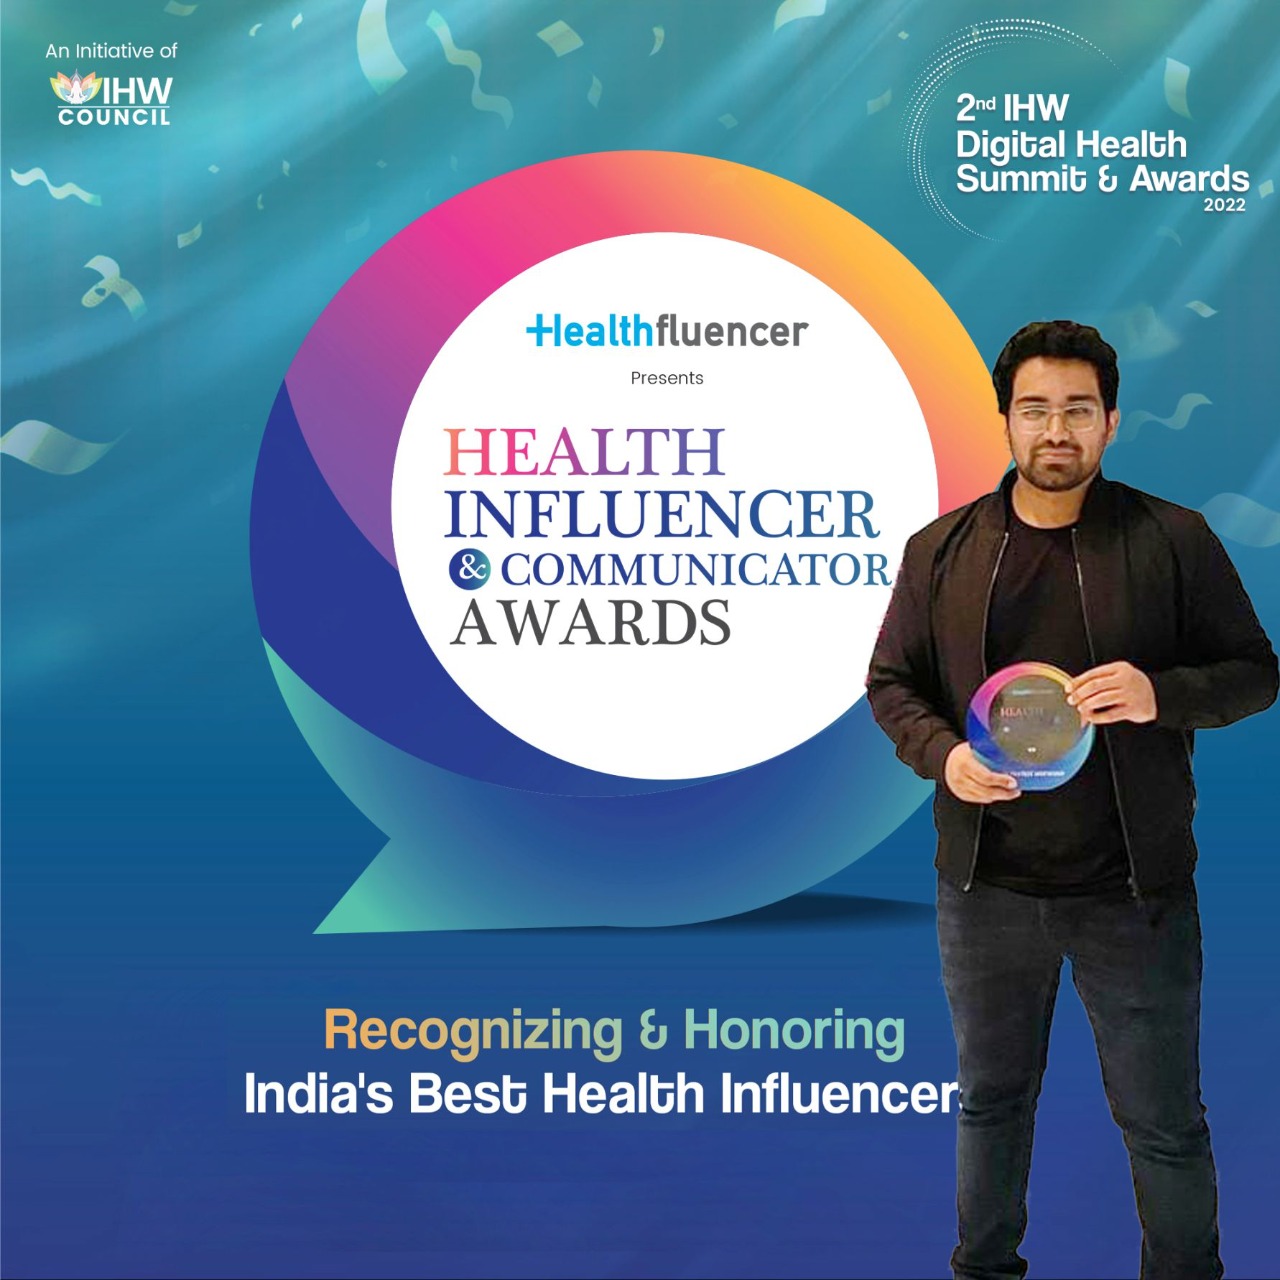 2nd IHW Digital Health Awards 2022